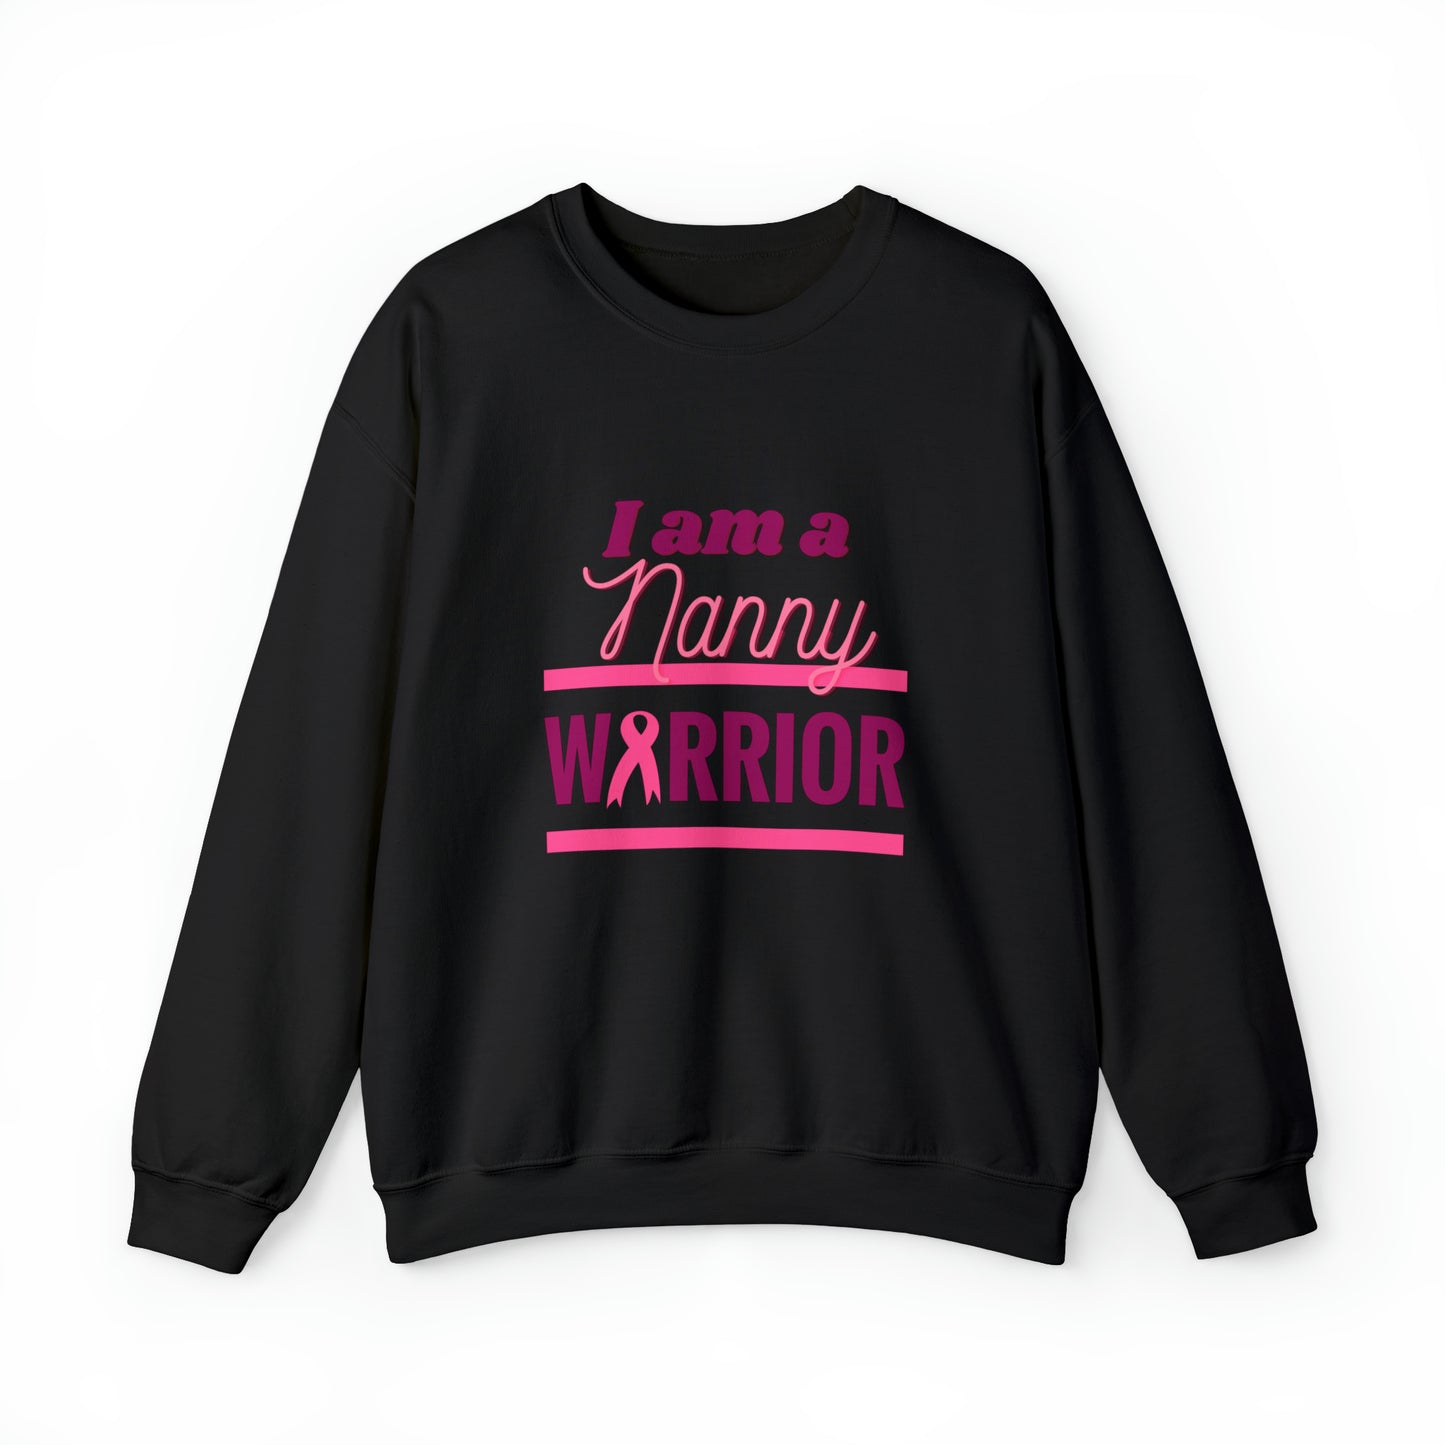 I am a Nanny Warrior - Crewneck Sweatshirt